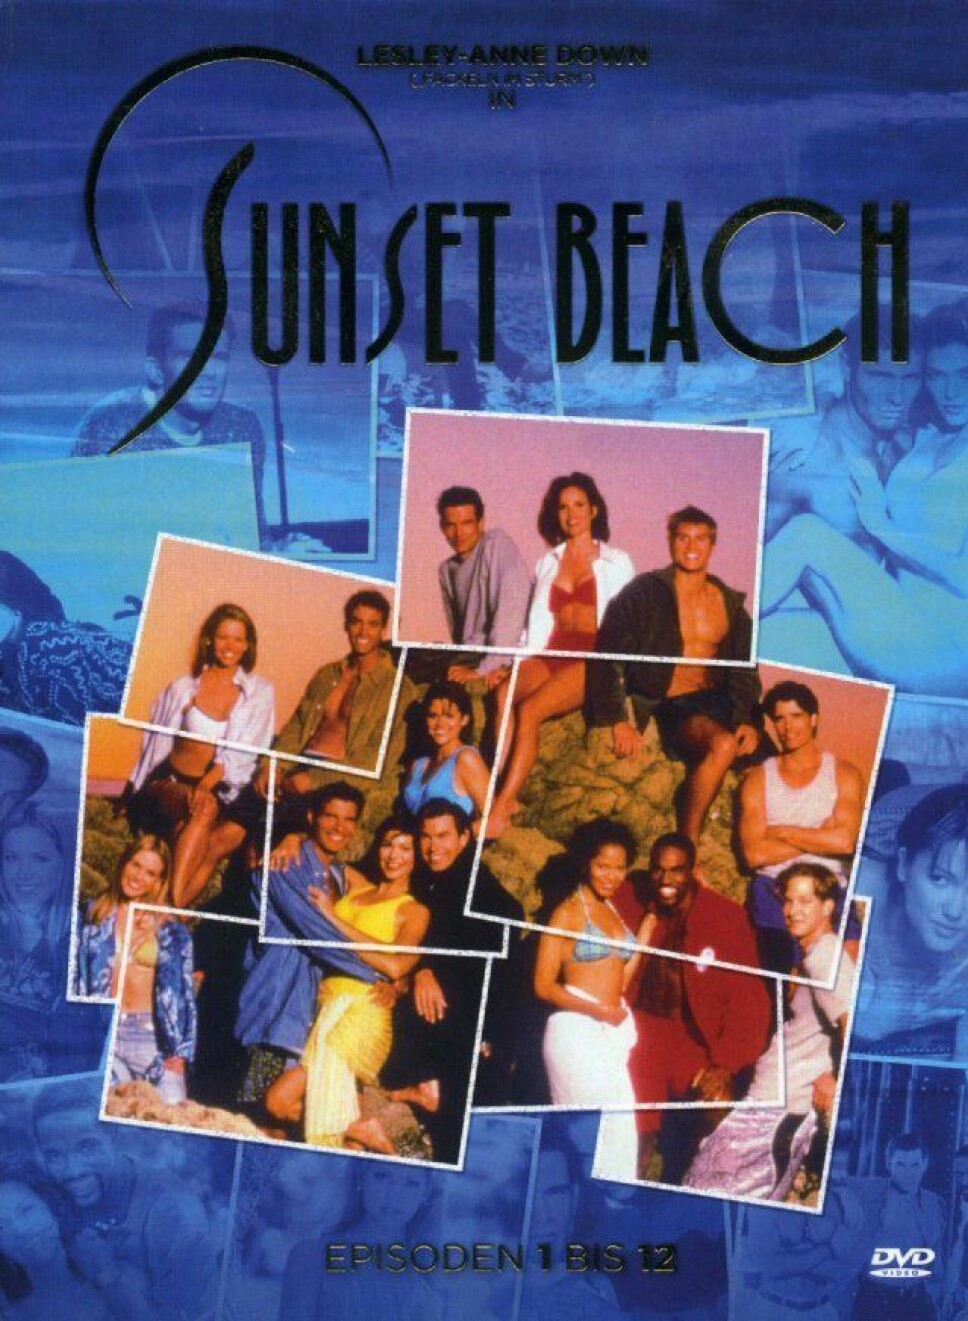 SUNSET BEACH: Mange husker denne serien, ikke nødvendigvis på grunn av handlingen, men alle de snåle vendingene plottet tok.